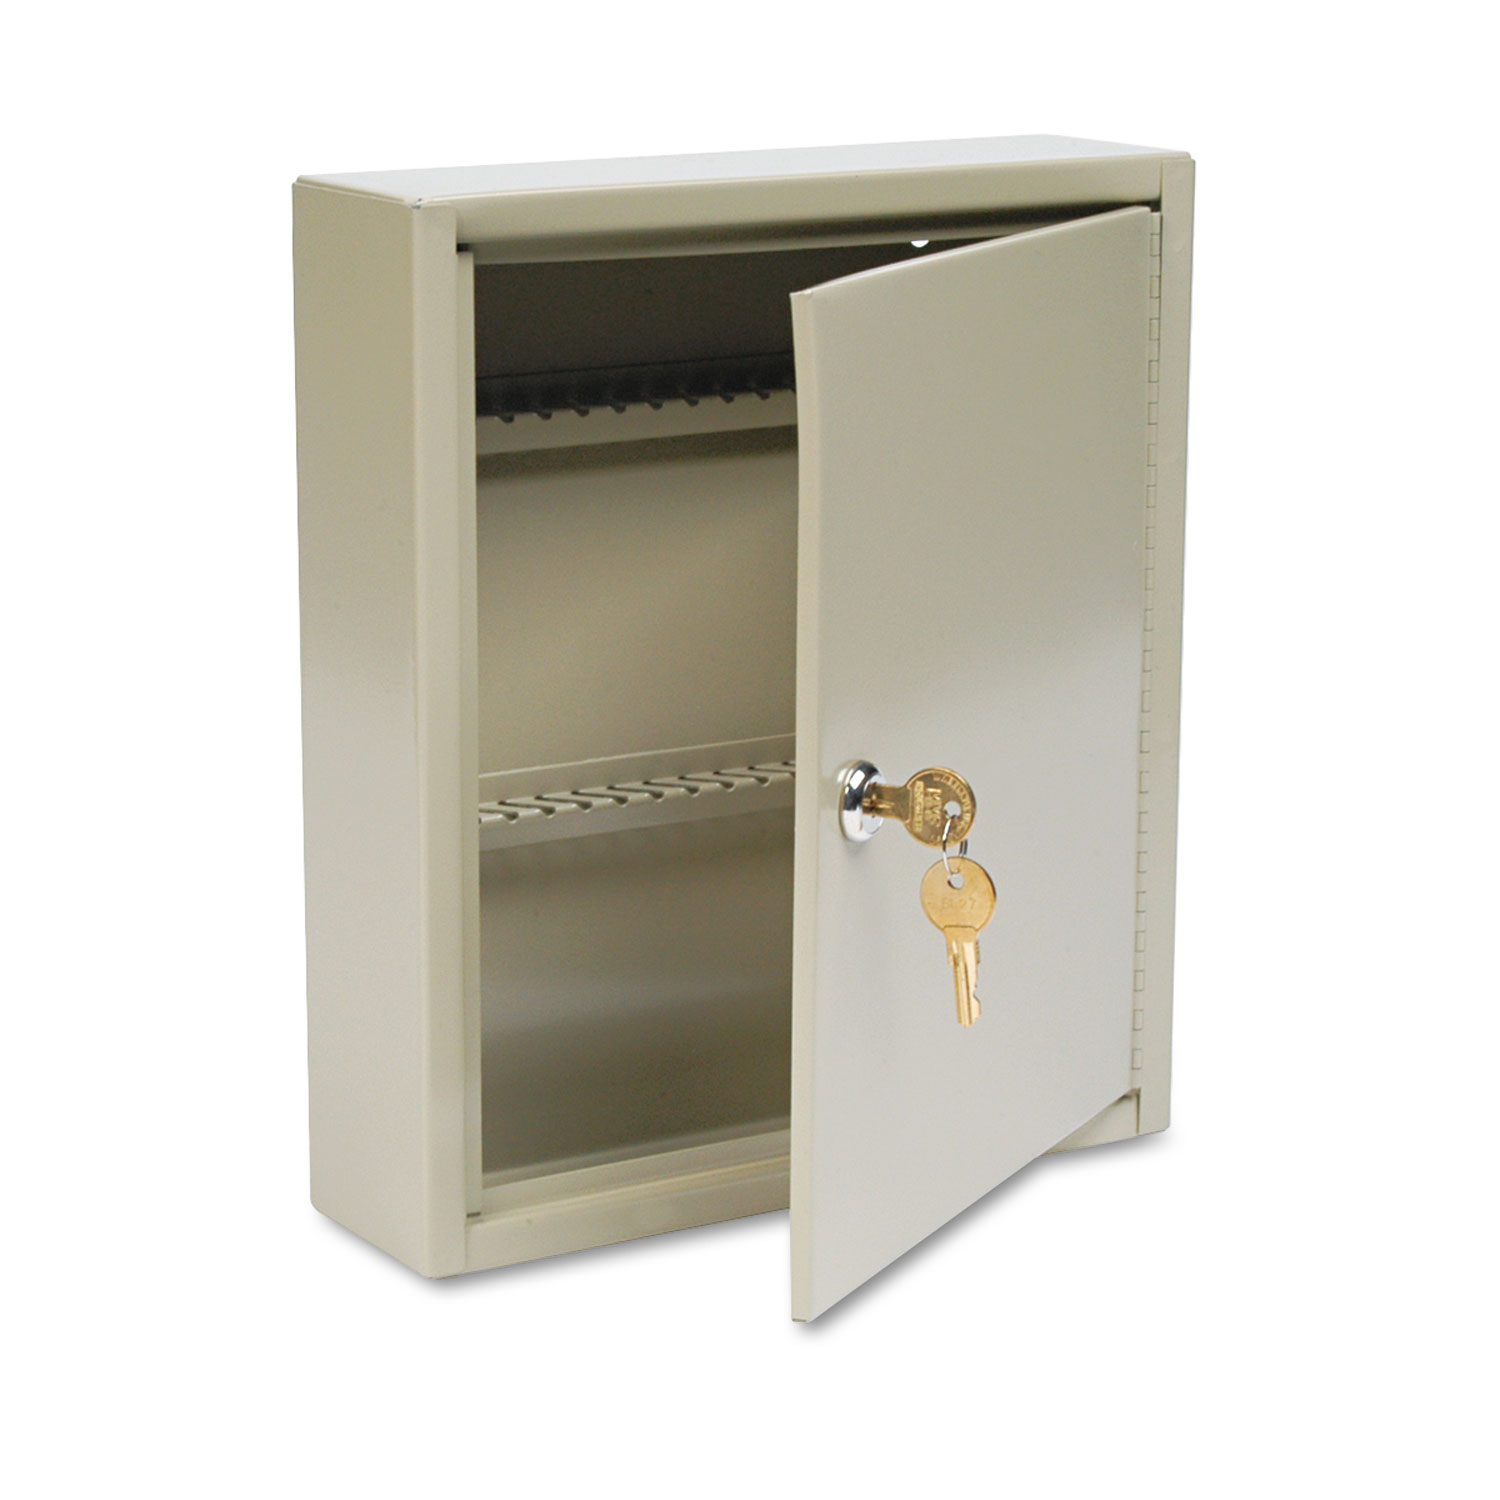  SteelMaster 2019060A03 Uni-Tag Key Cabinet, 60-Key, Steel, Sand, 10 5/8 x 3 x 12 1/8 (MMF2019060A03) 